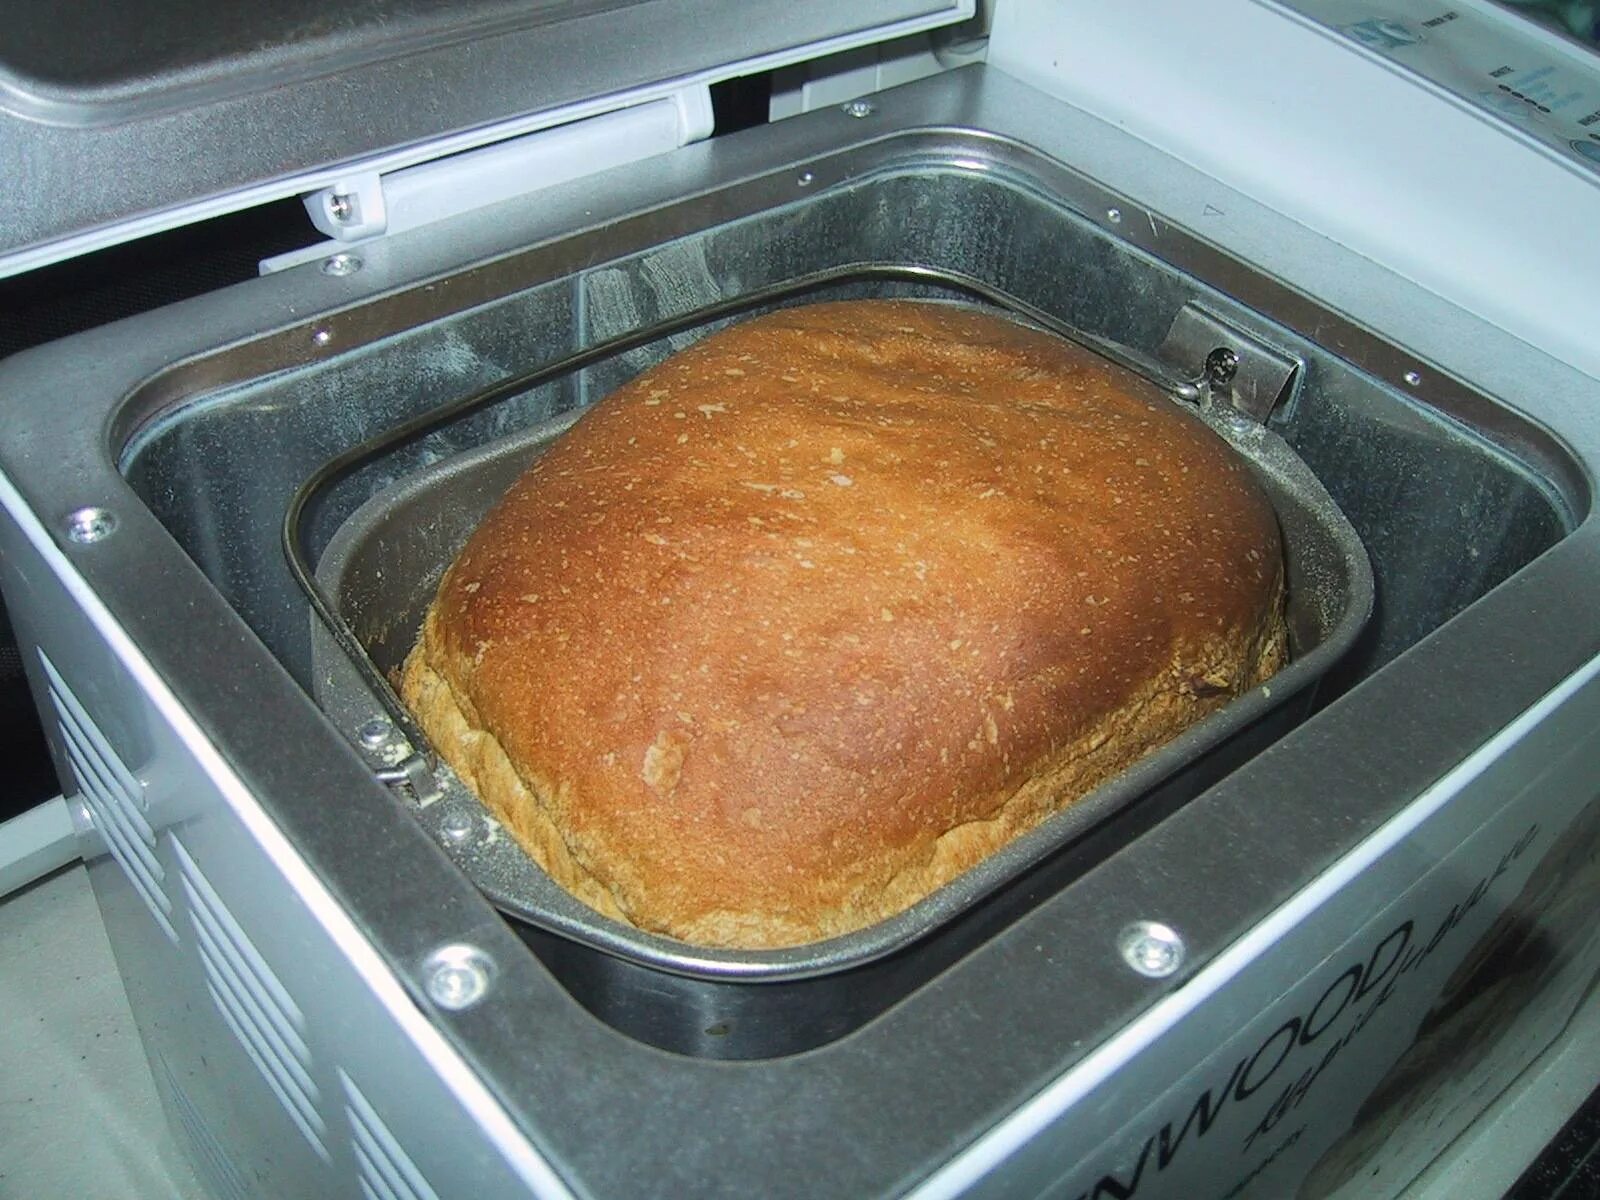 Хлеб в хлебопечке. Хлебопечка с хлебом. Выпечка хлеба в хлебопечке. Домашний хлеб из хлебопечки.